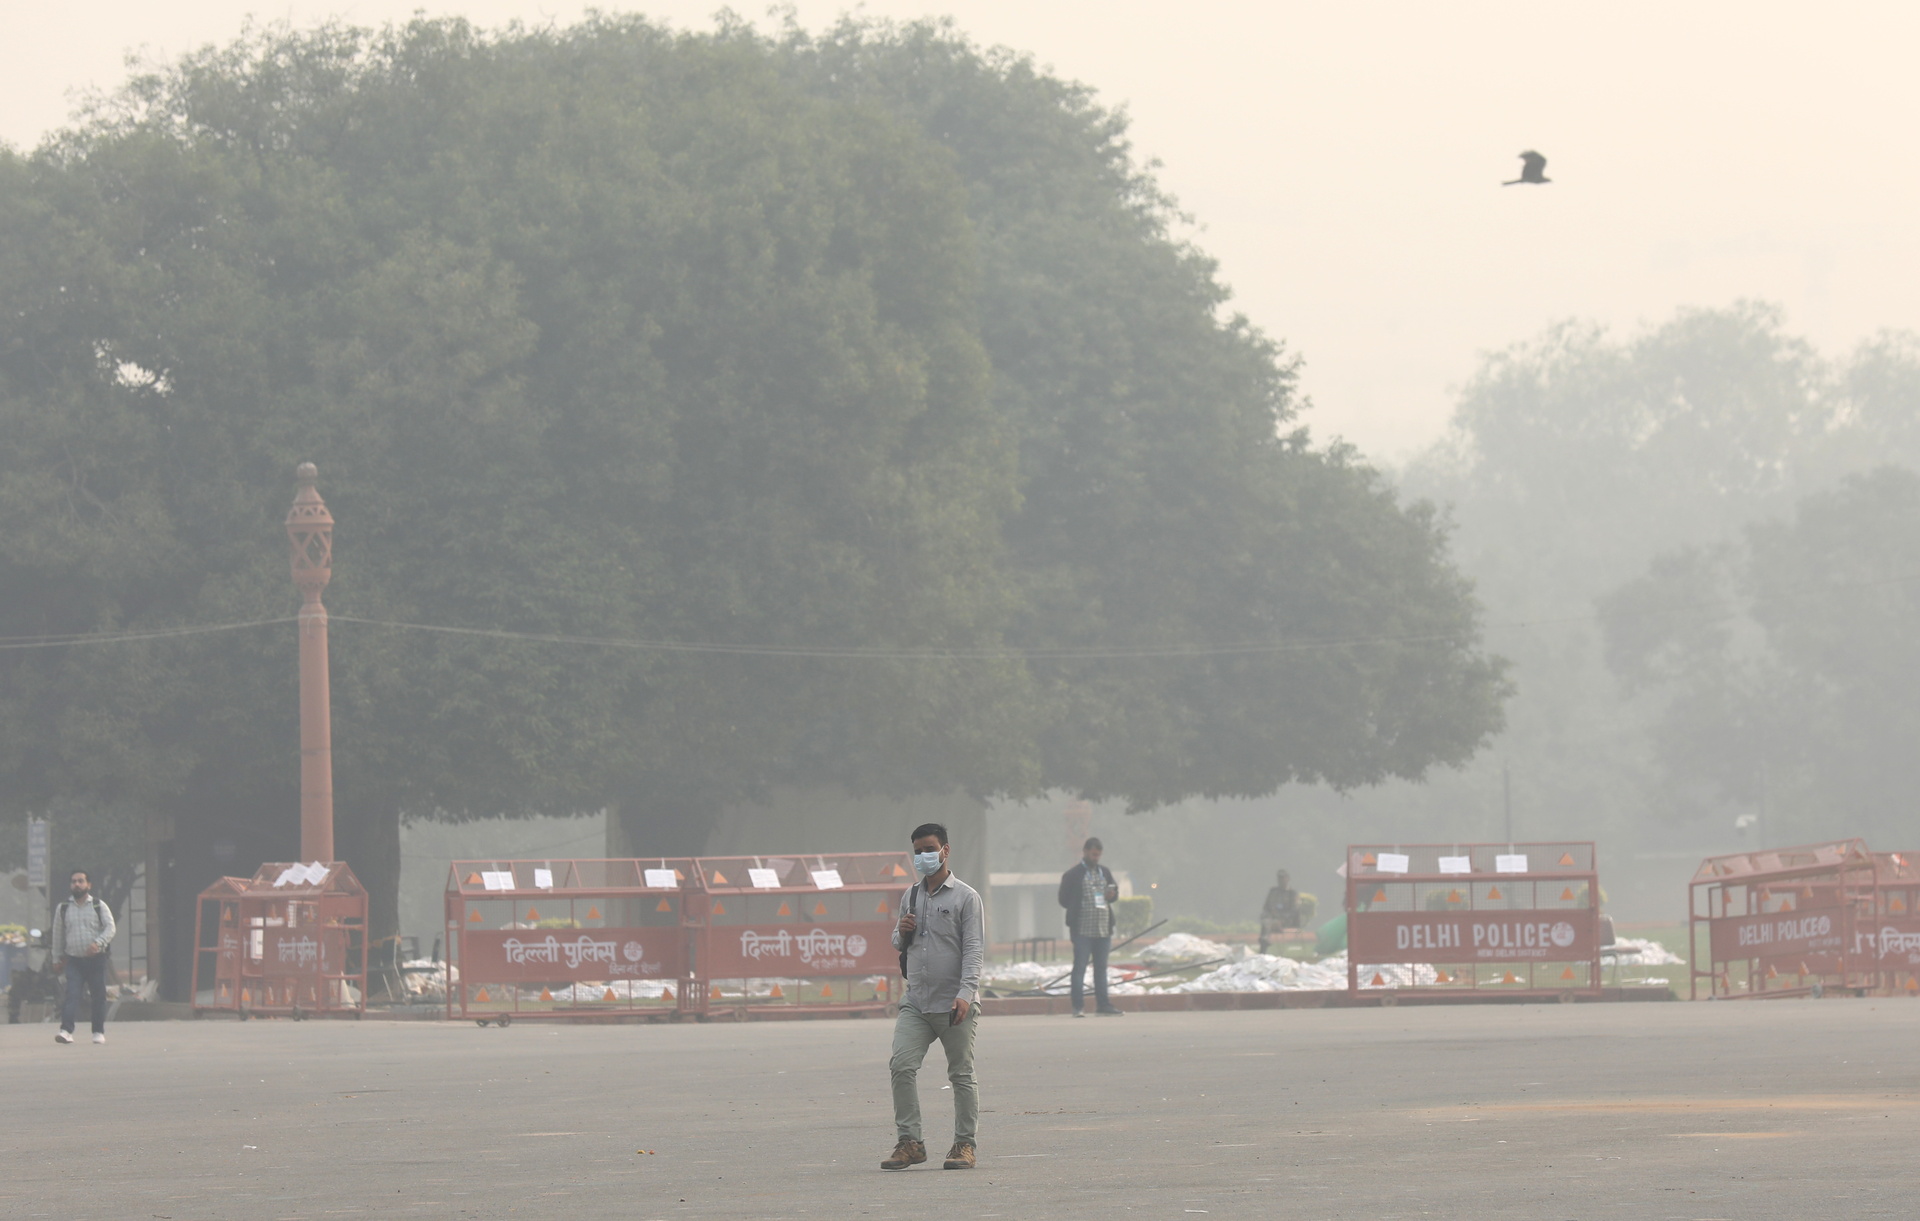 Contaminación del aire ahoga a Nueva Delhi ante la falta de acción sistemática en India